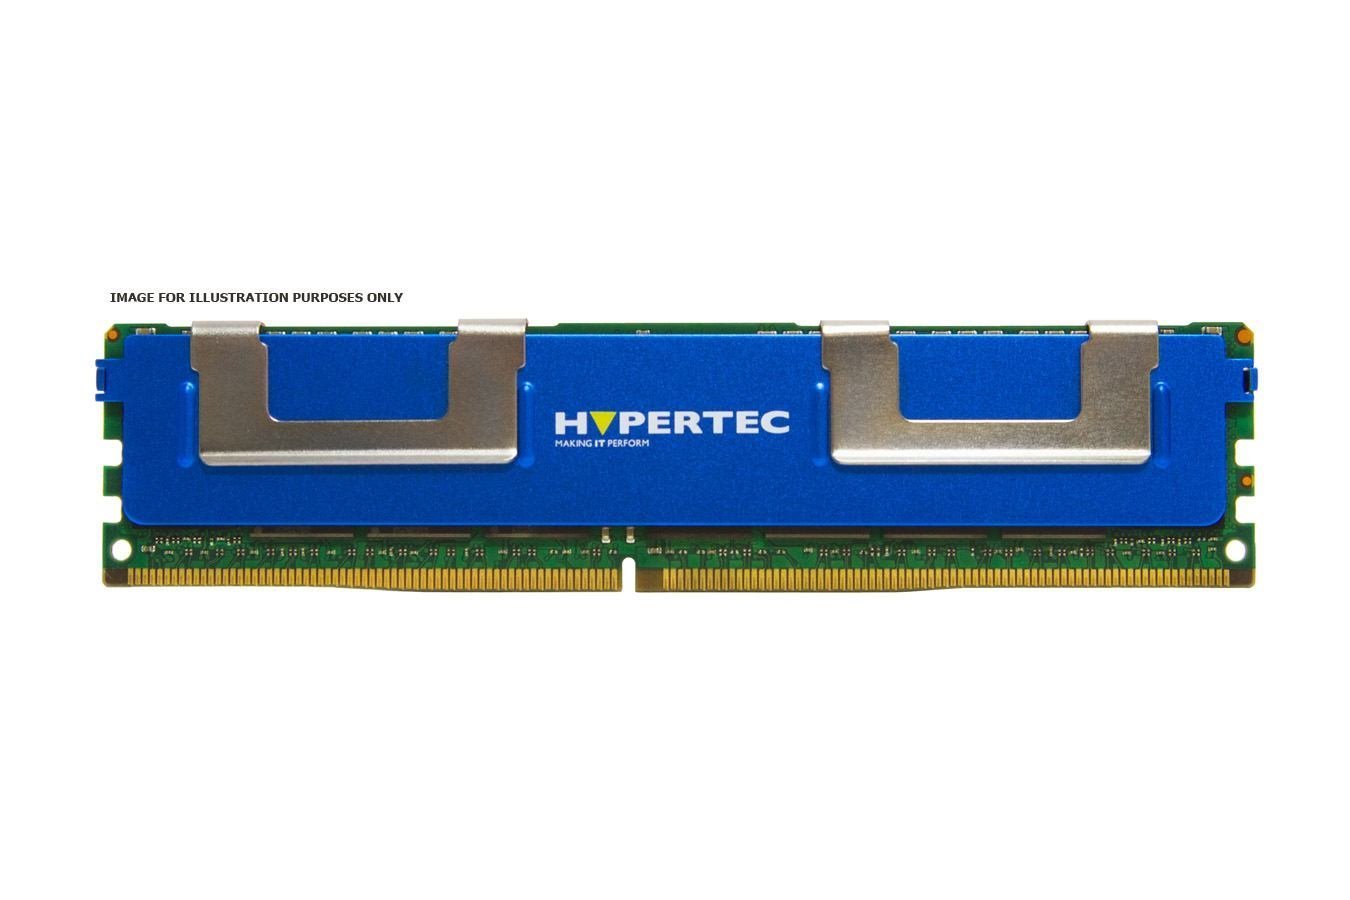 Hypertec RAM Module - 8 GB - DDR3-1333/PC3-10600 DDR3 SDRAM - 1333 MHz